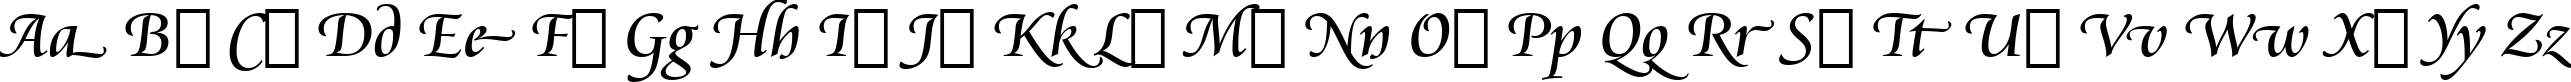 Пример написания английского алфавита шрифтом Cataneo Regular Swash BT